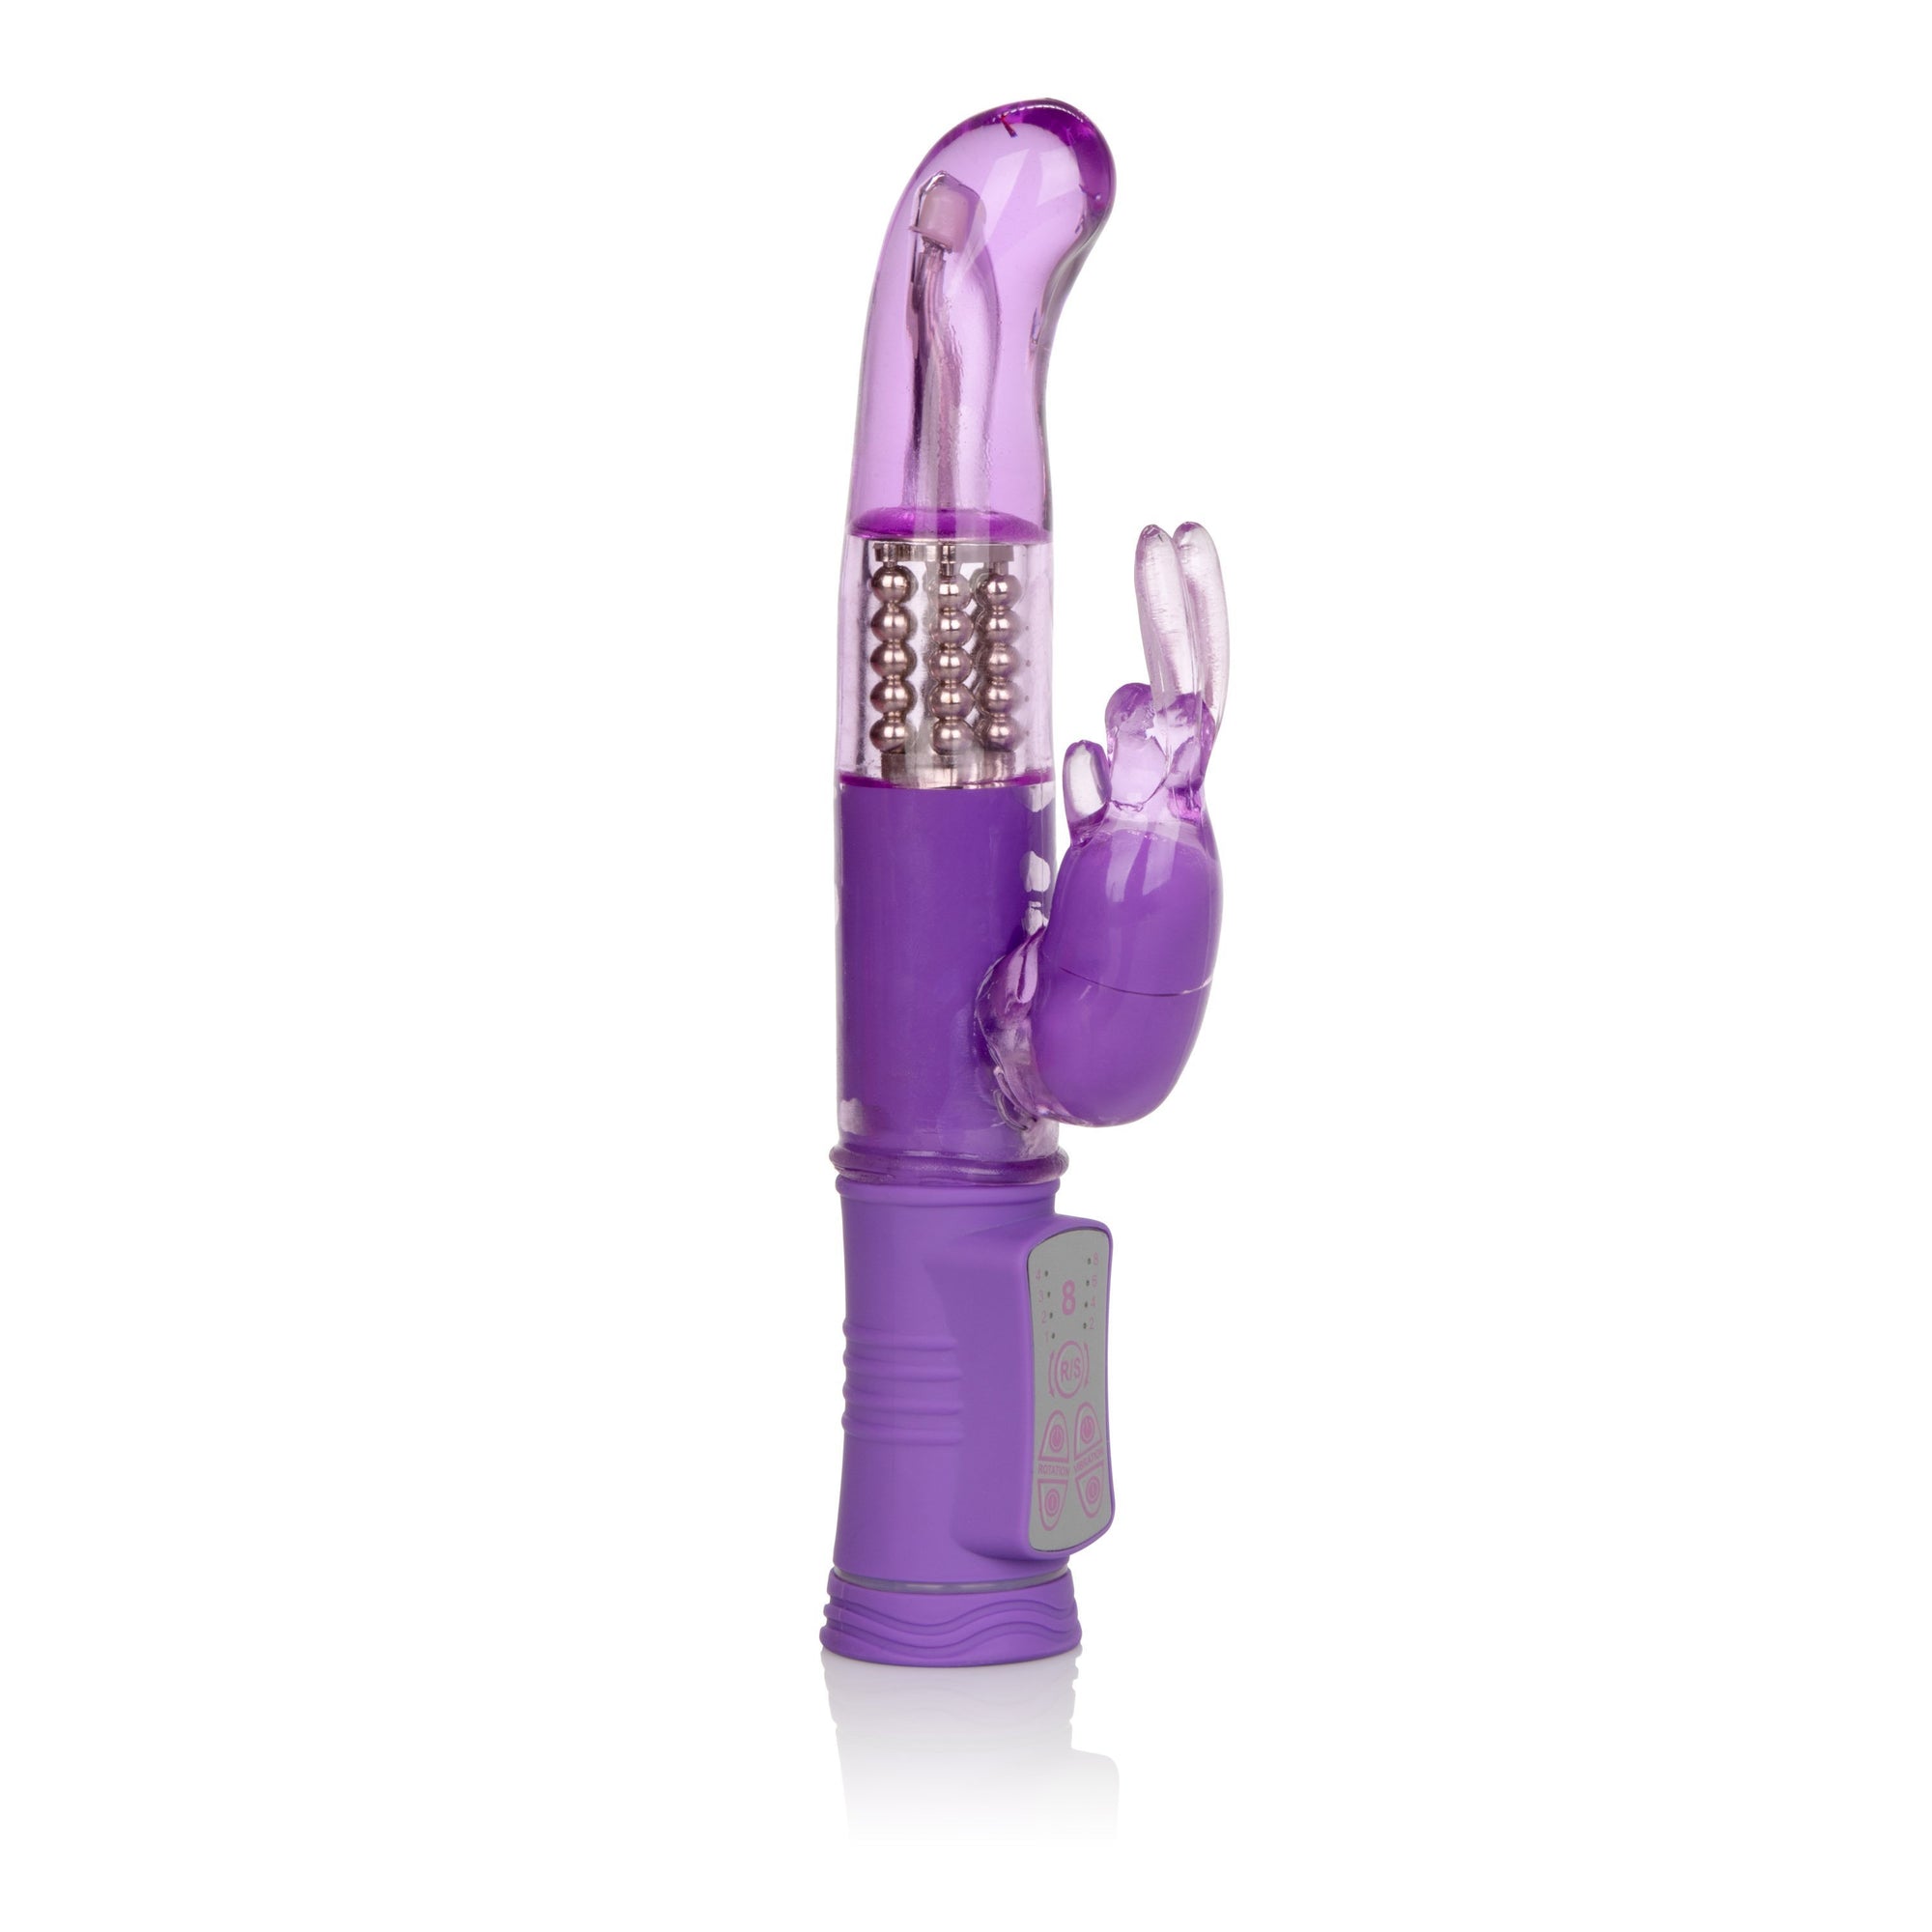 California Exotics - Shane's World Jack Rabbit G Vibrator (Purple) Rabbit Dildo (Vibration) Non Rechargeable Singapore